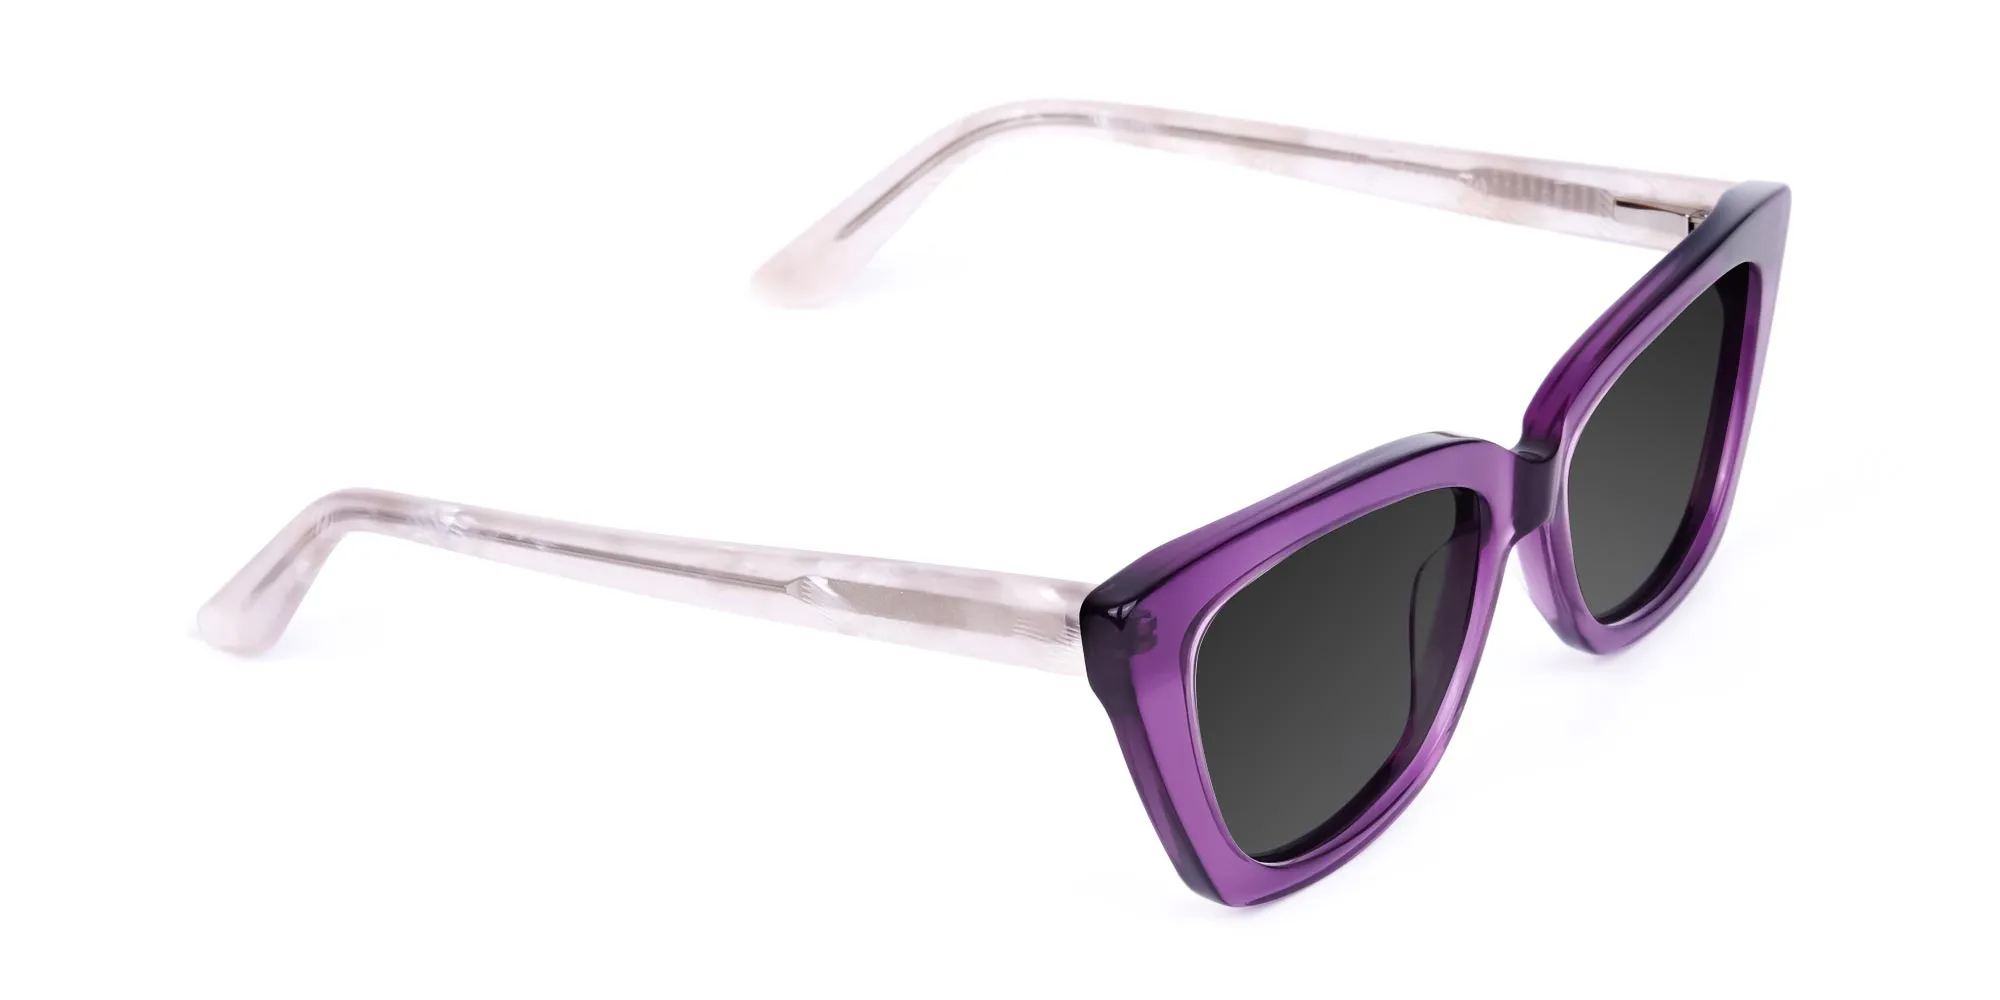 Cat Eye Sunglasses For Women-2